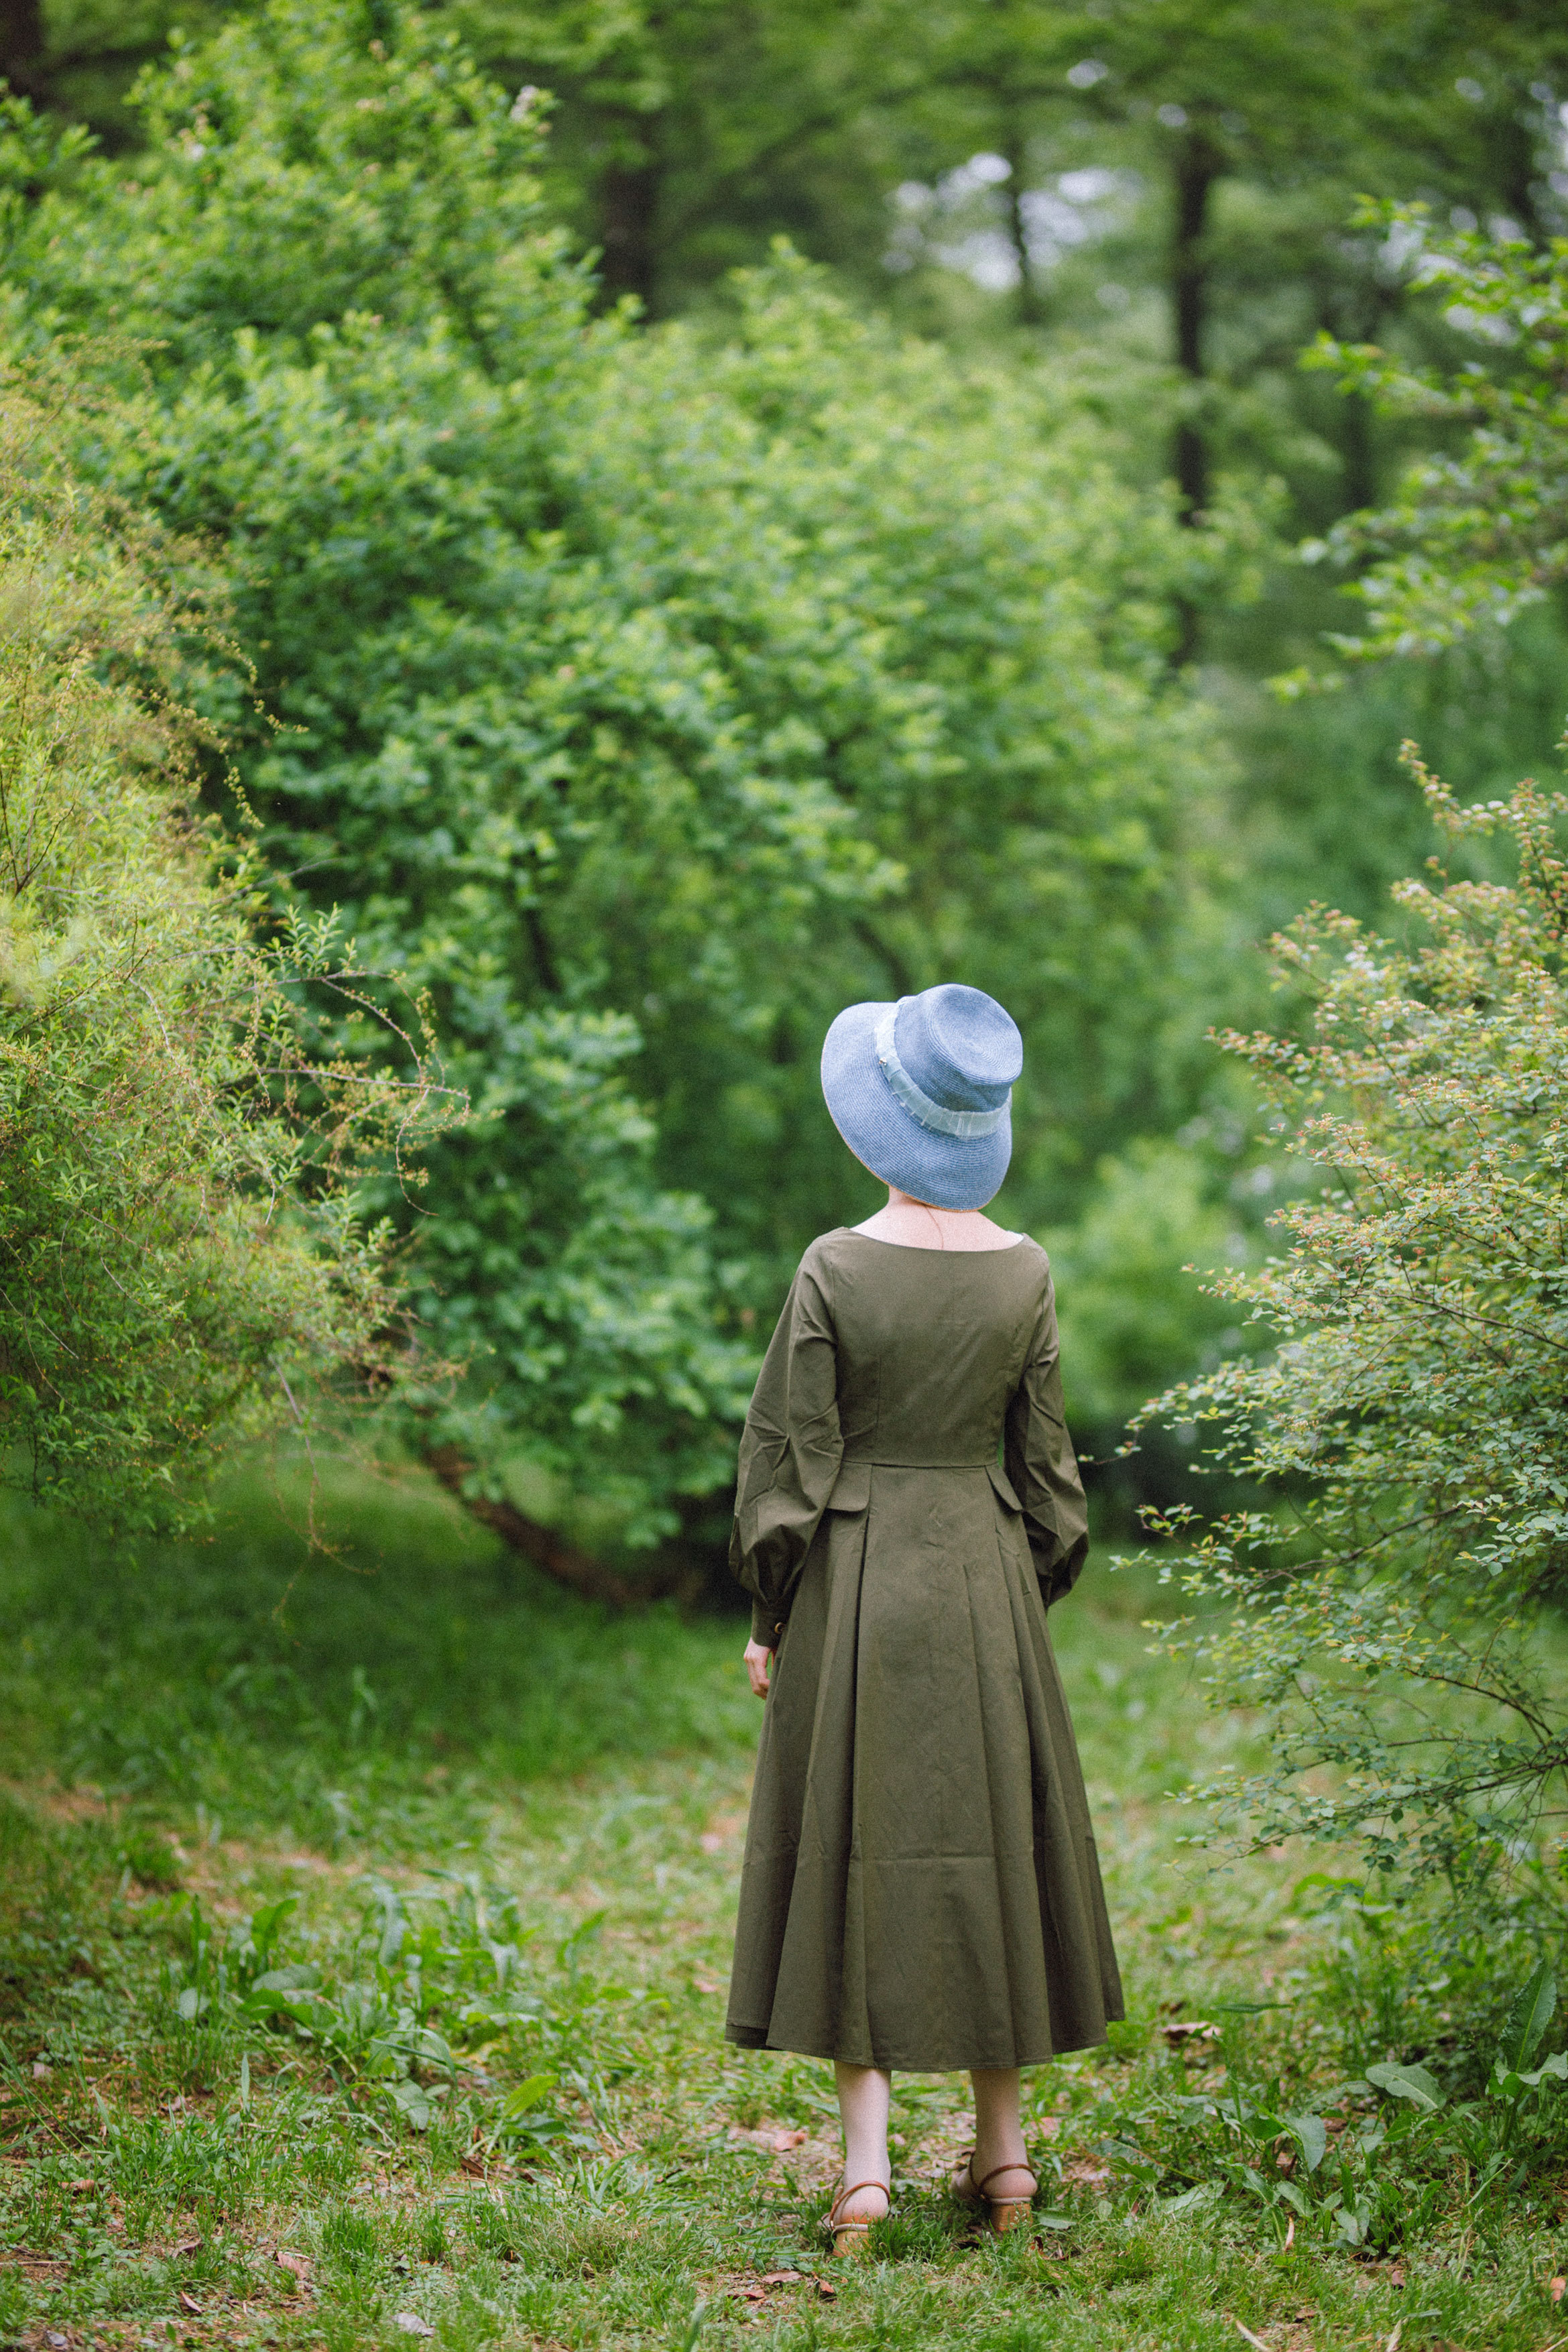 九部简·奥斯汀电影感受19世纪的英伦田园风情